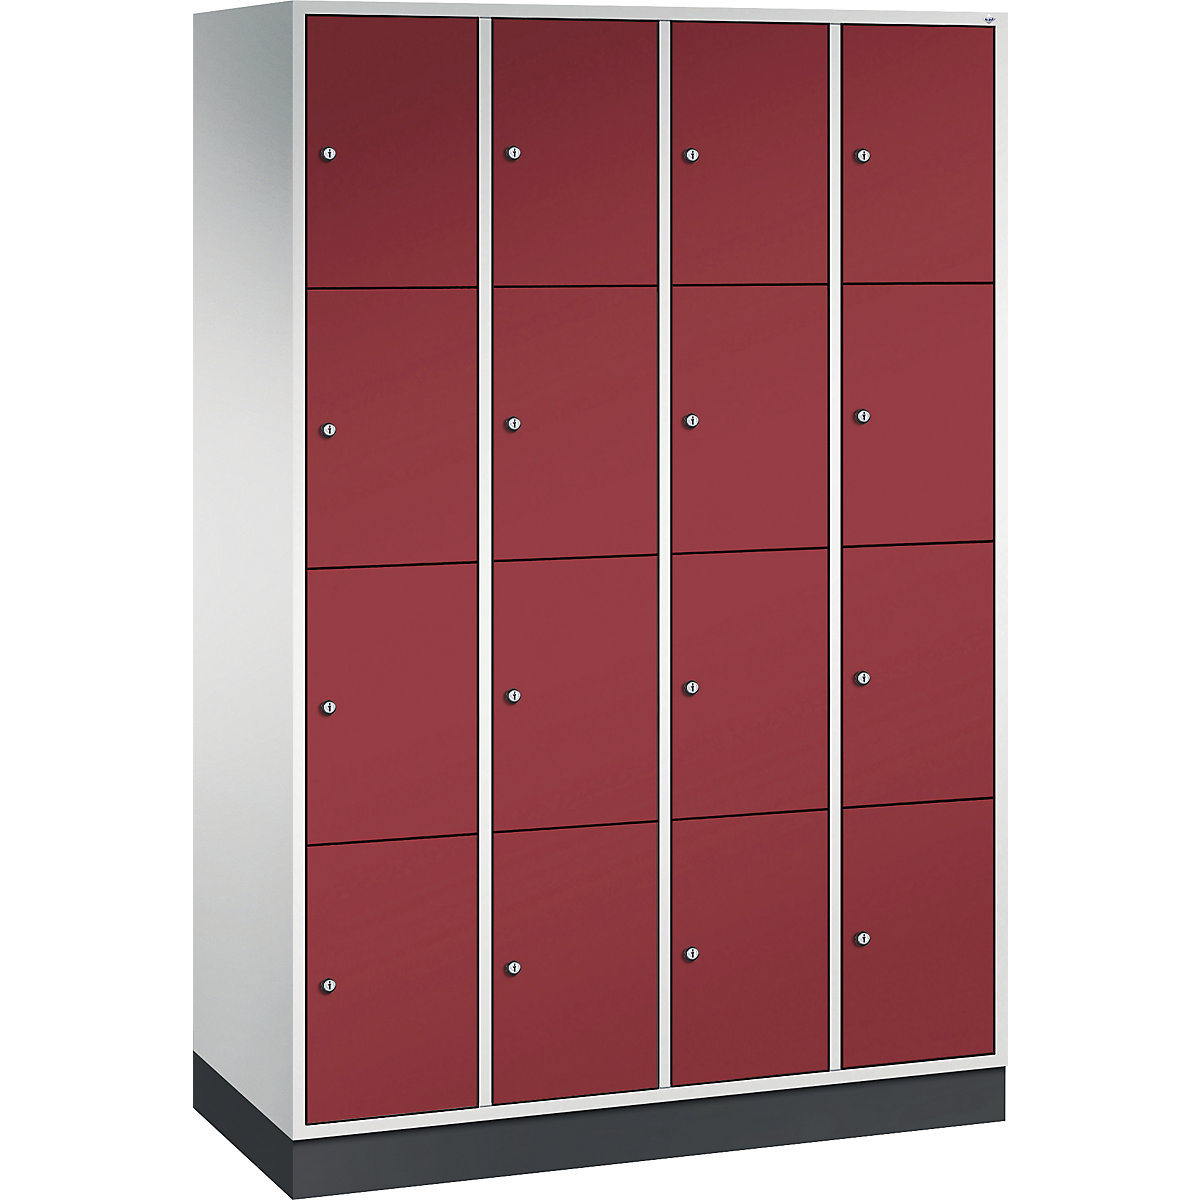 Vestiaire multicases en acier INTRO, casiers hauteur 435 mm – C+P, l x p 1220 x 500 mm, 16 casiers, corps gris clair, portes rouge rubis-4